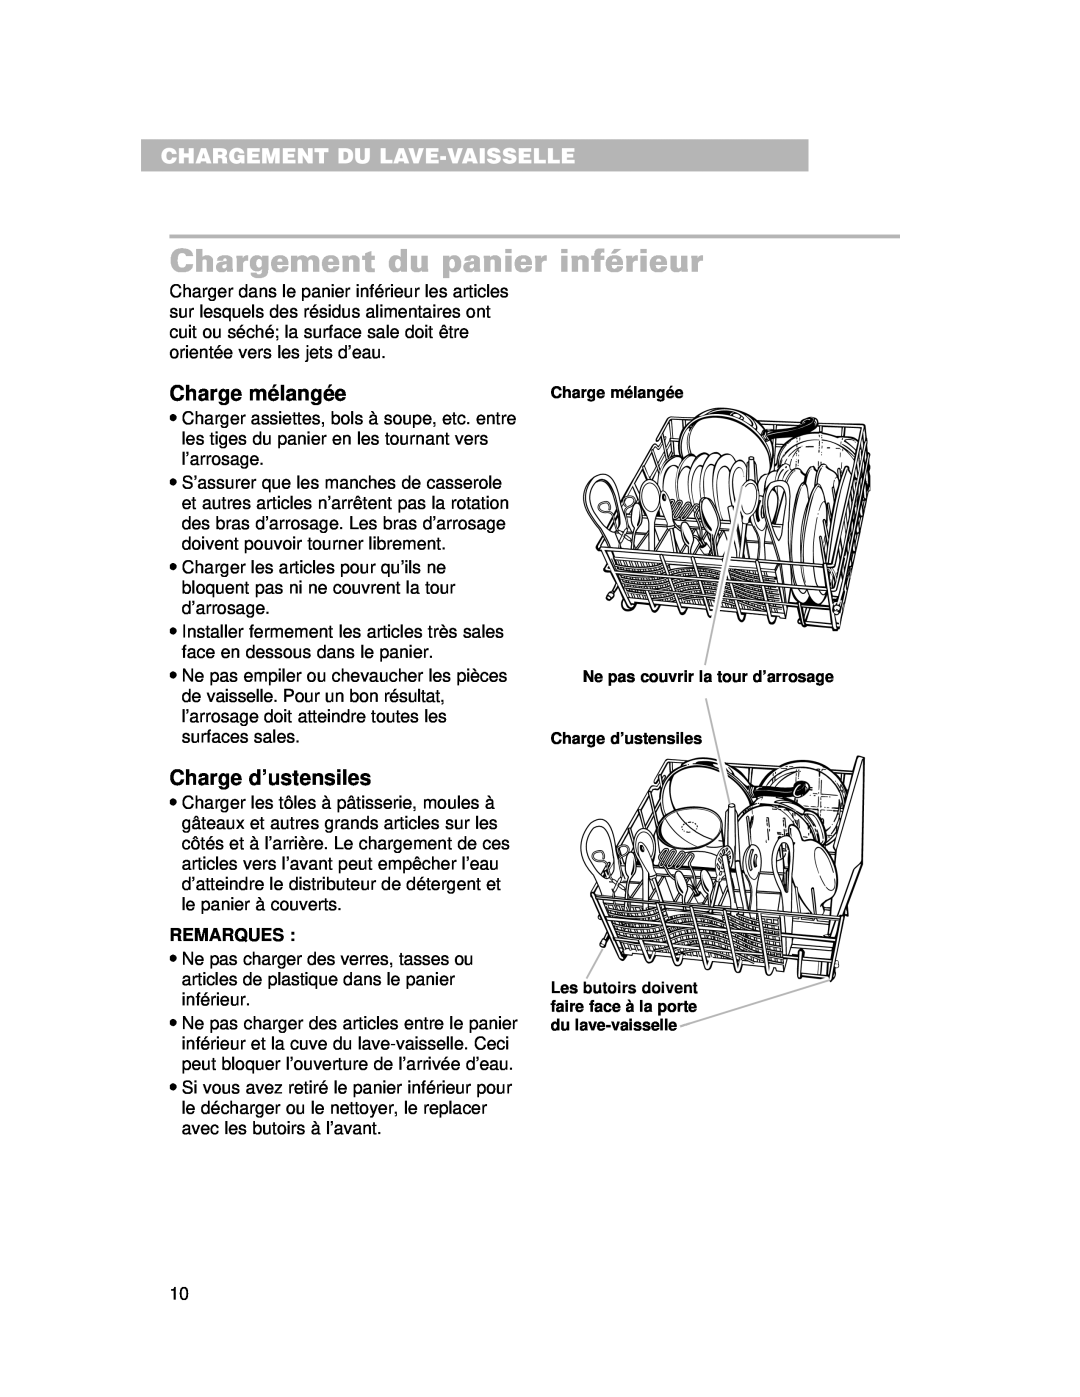 Whirlpool 910 Series Chargement du panier inférieur, Charge mélangée, Charge d’ustensiles, Chargement Du Lave-Vaisselle 